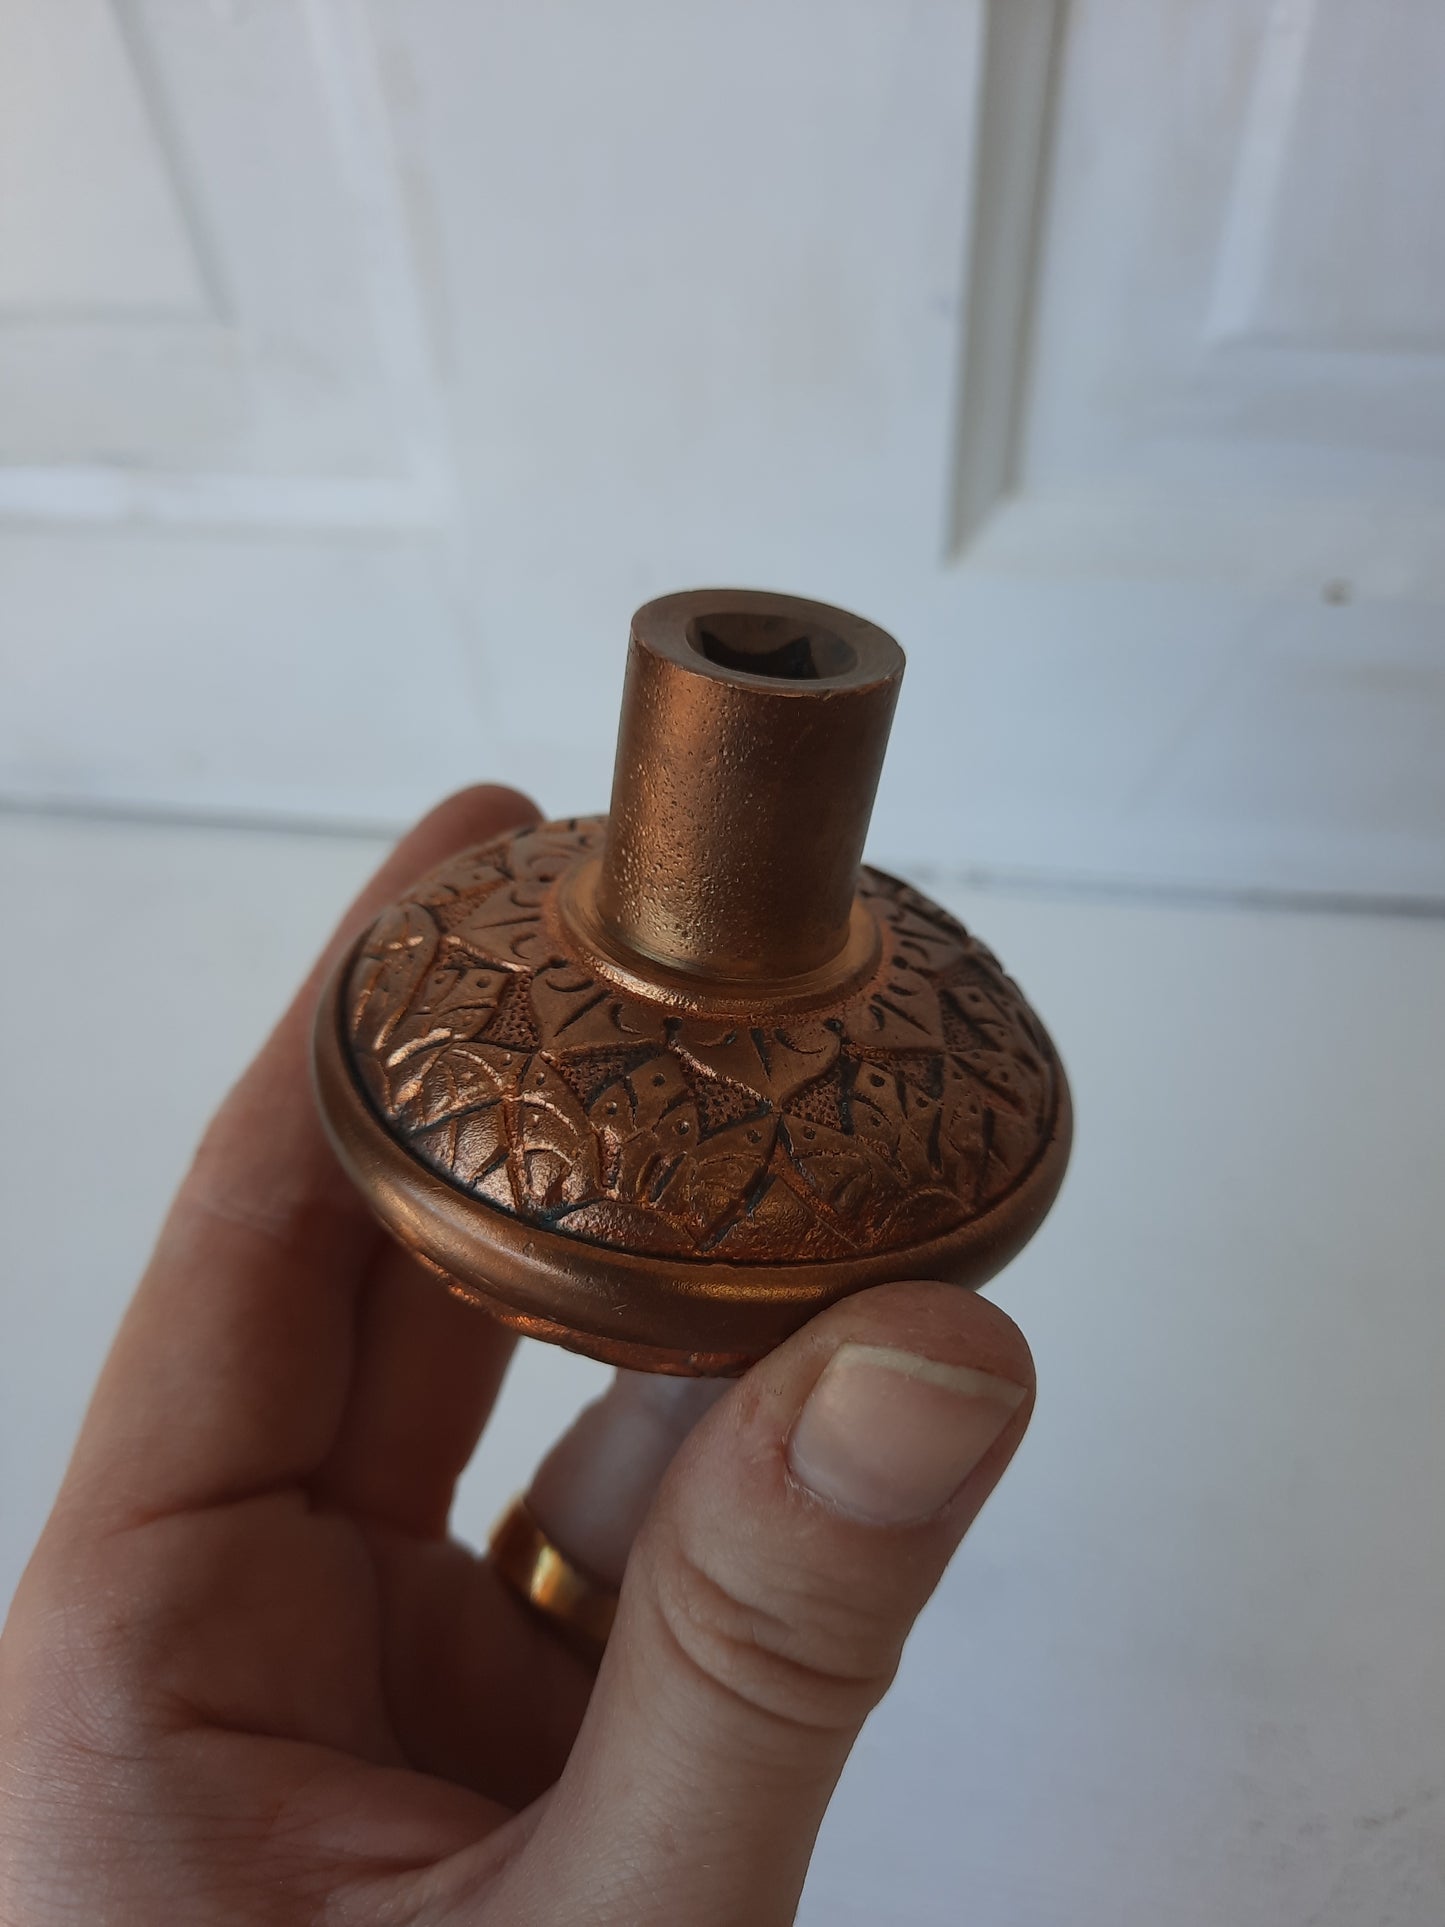 Russell Erwin Bronze Eastlake Flower Doorknob from Victorian Era, Vintage Brass Doorknob, Geometric Design 083112